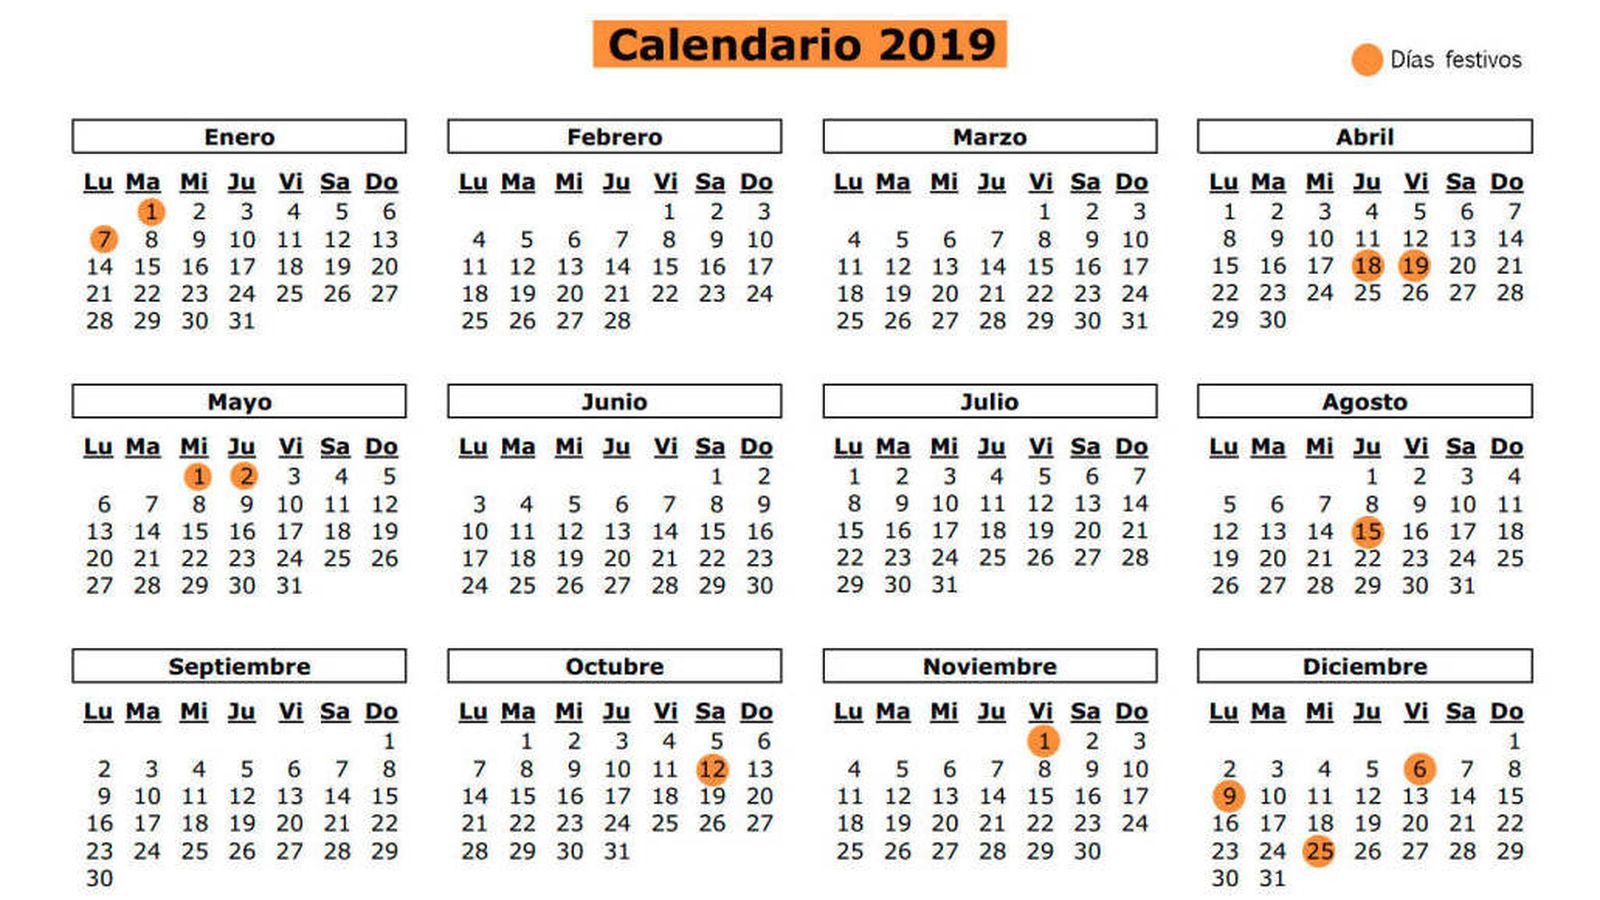 Foto: Calendario laboral 2019 de la Comunidad de Madrid. (El Confidencial)